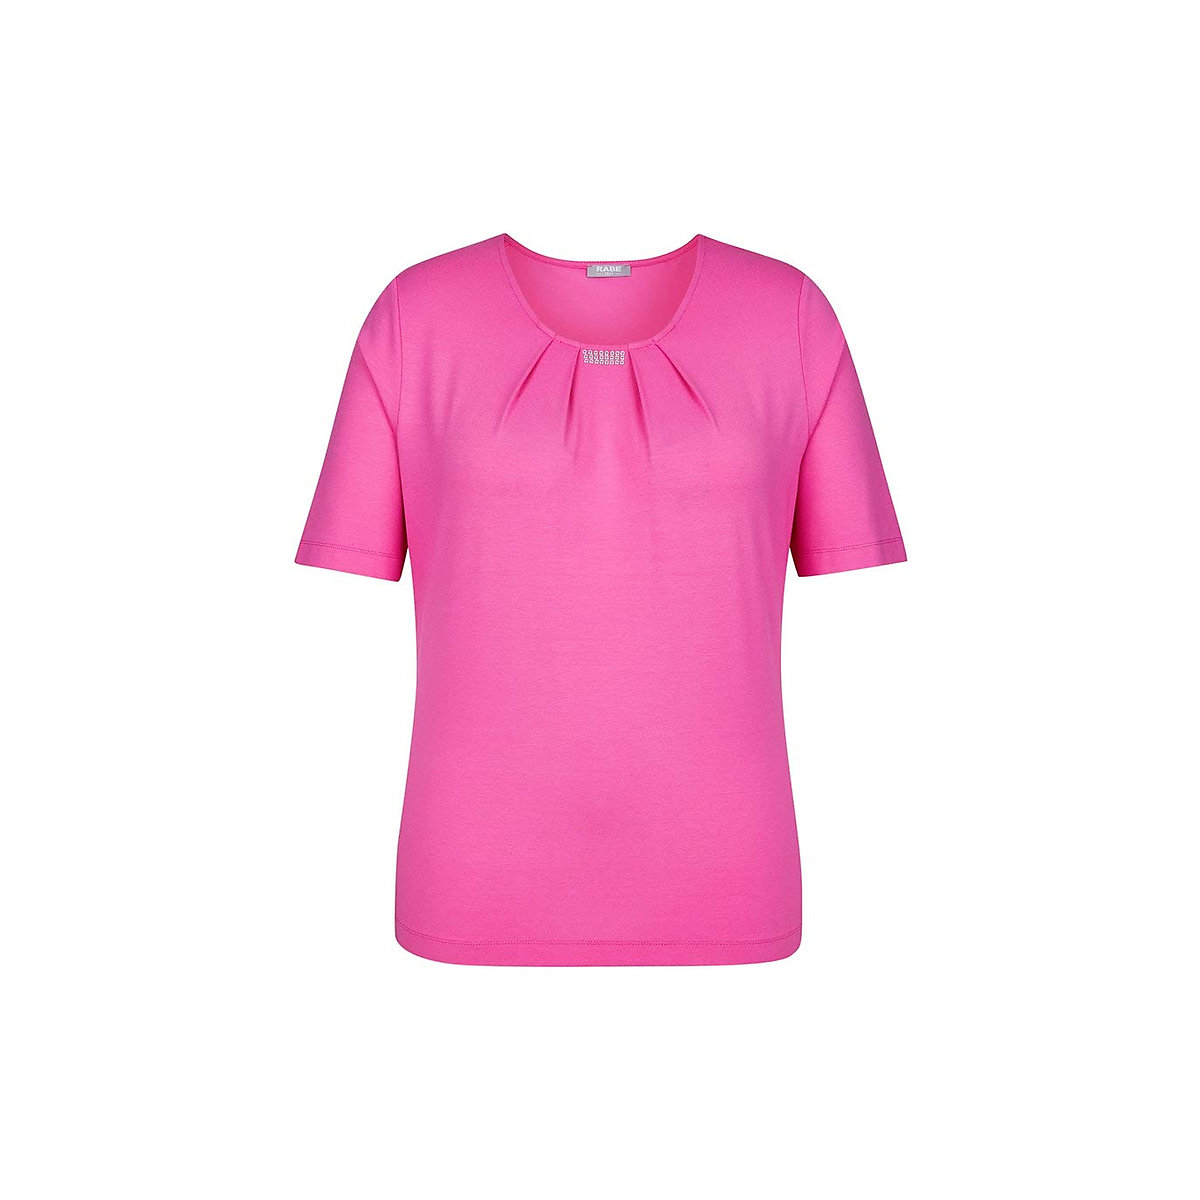 Rabe Rundhals T-Shirt pink